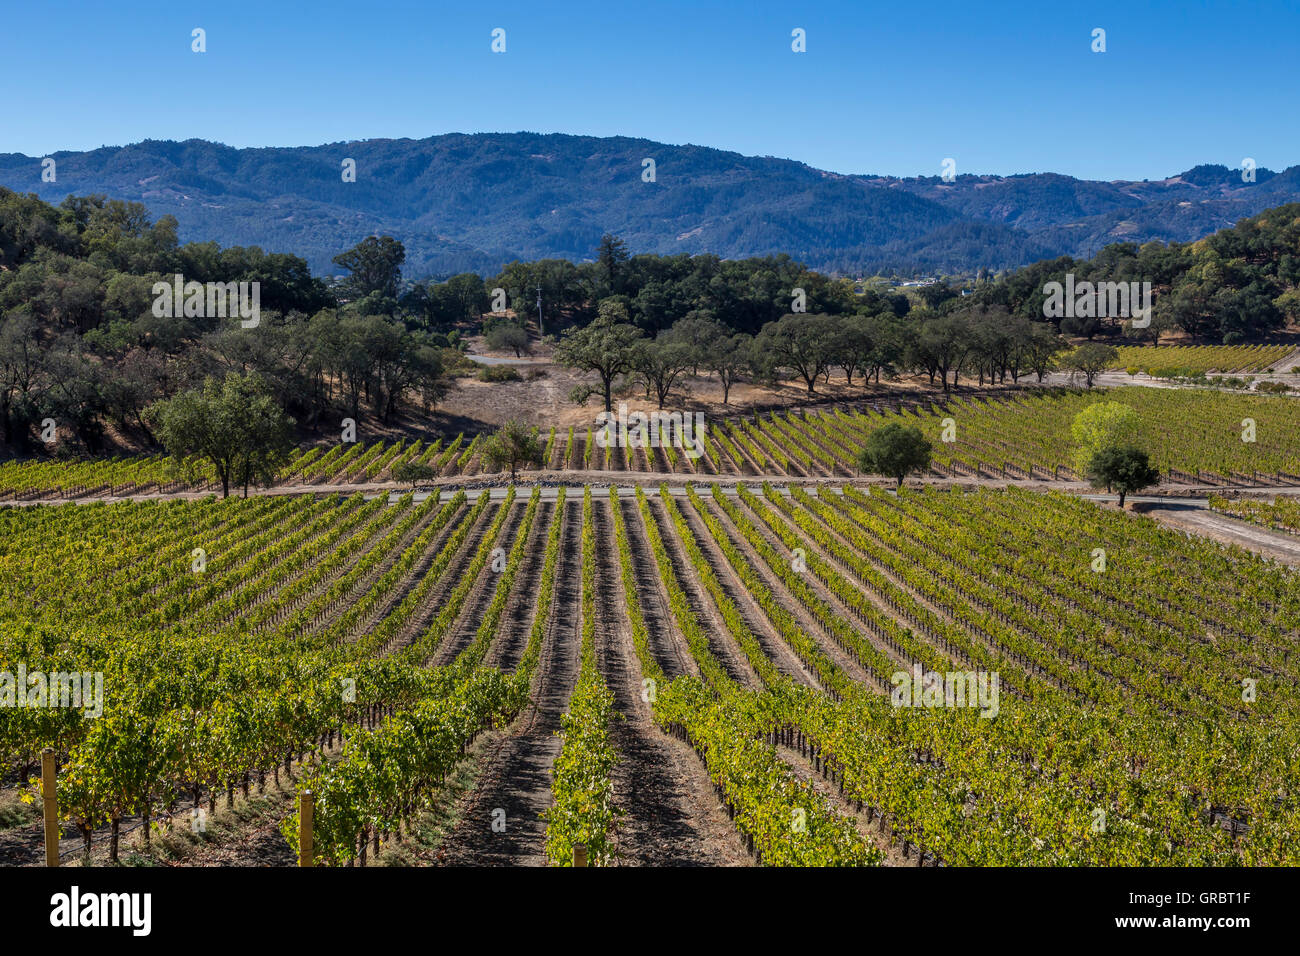 Vignoble de raisin, raisin vignes, vignobles, vue de l'extérieur terrasse dégustation, Joseph Phelps Vineyards, Saint Helena, Napa Valley, Californie Banque D'Images